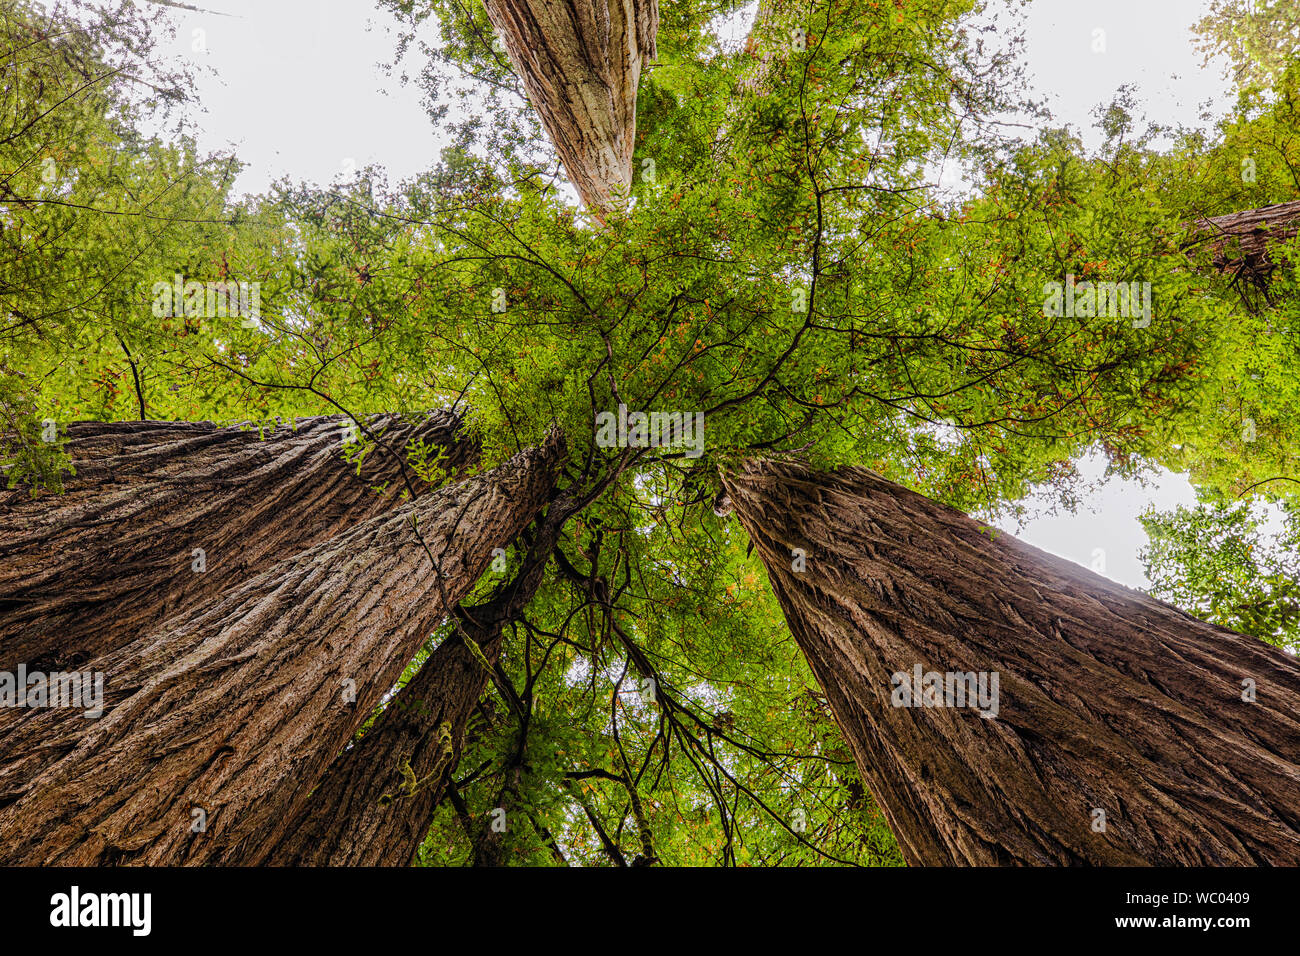 Ver en línea recta hacia arriba entre las secoyas gigantes de California en el norte de California Foto de stock